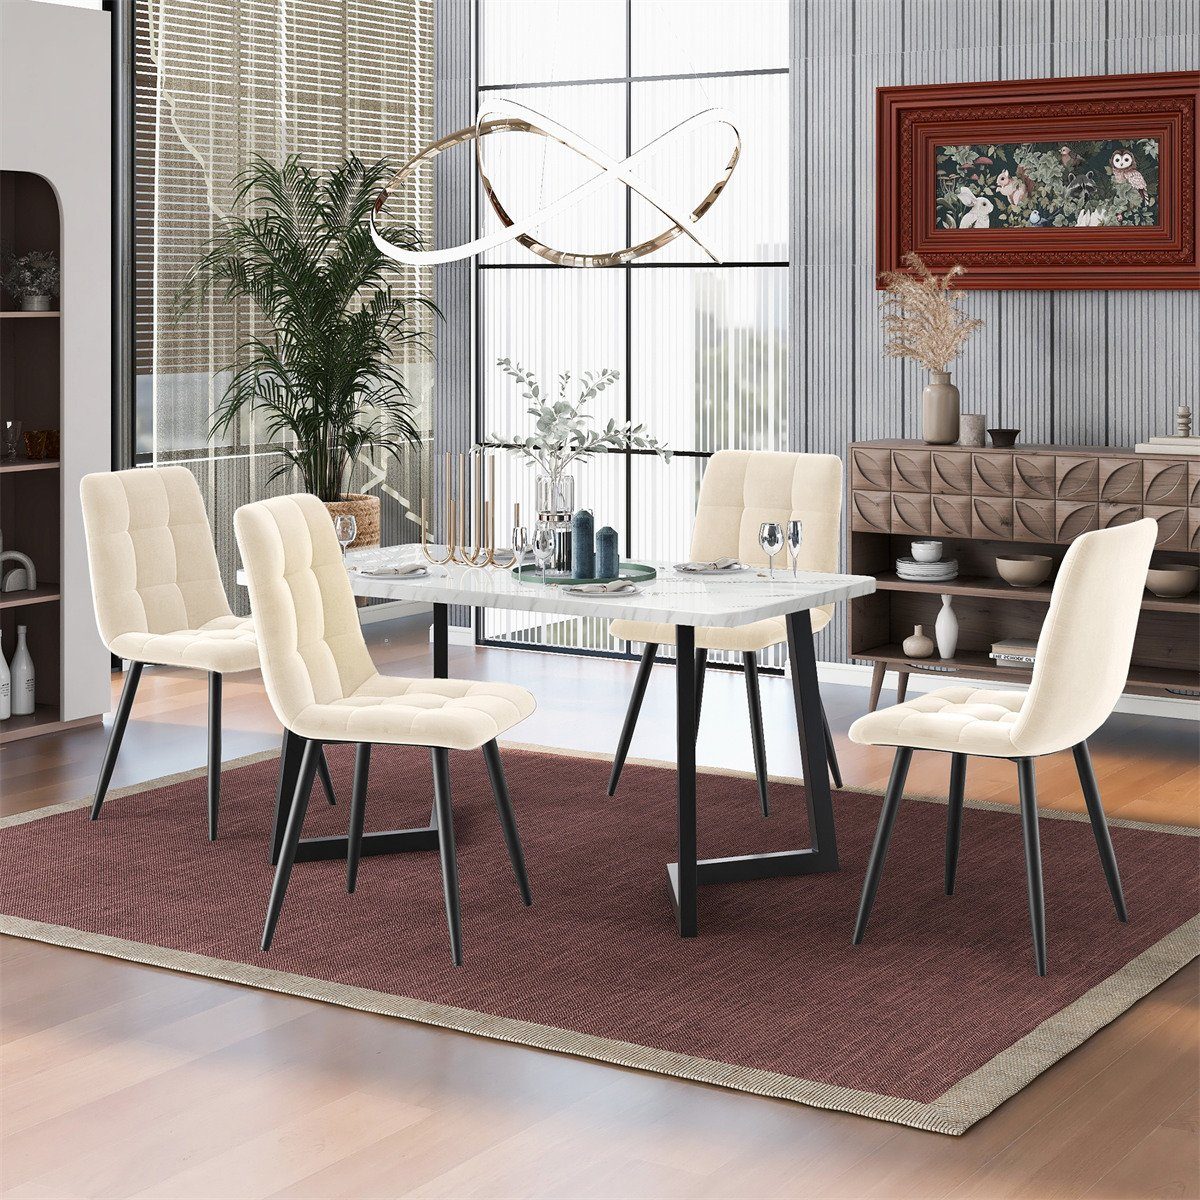 XDeer Esszimmerstuhl 4er Set Esszimmerstühle,Polsterstuhl Küchenstuhl mit Rückenlehne, Sitzfläche aus Samt Gestell aus Metall,Leicht zu montieren Beige | Stühle